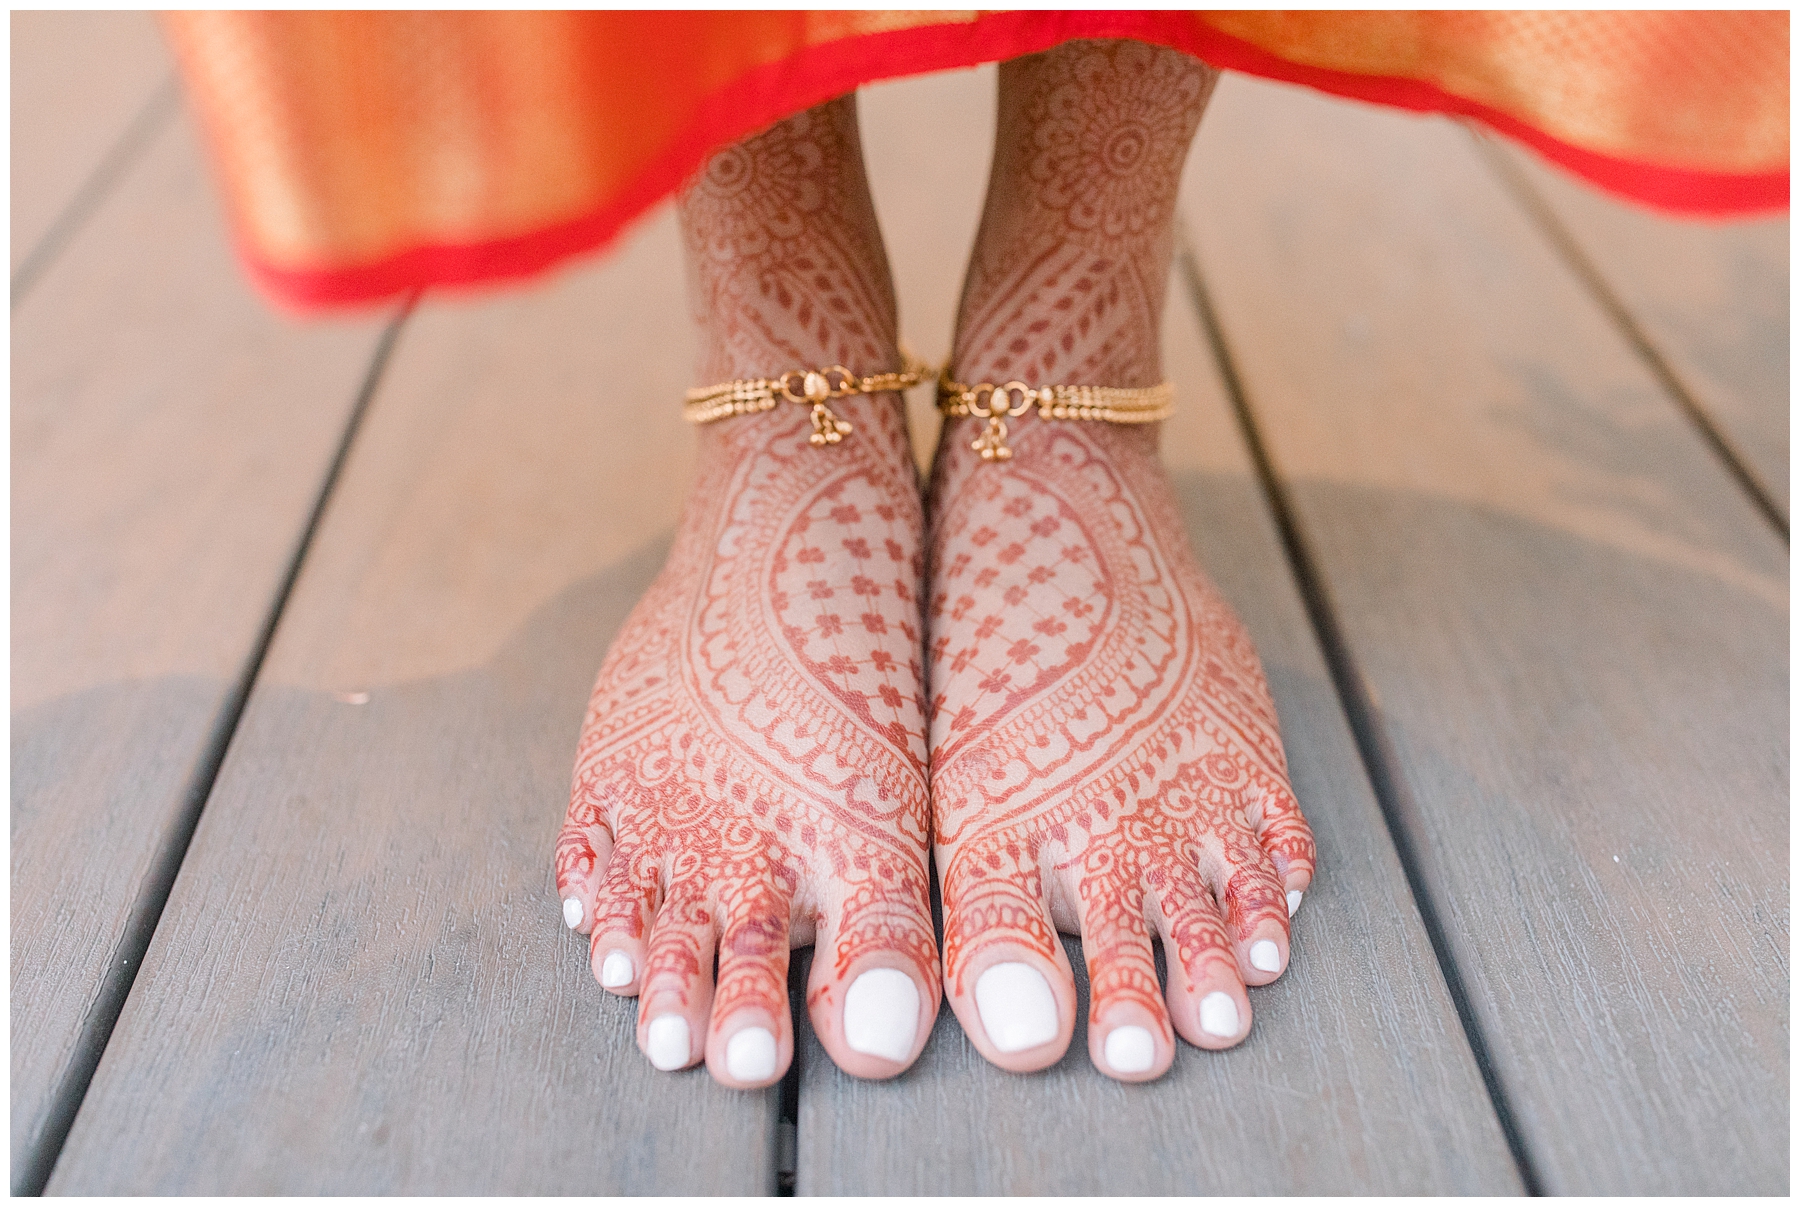 Henna art on bride's feet